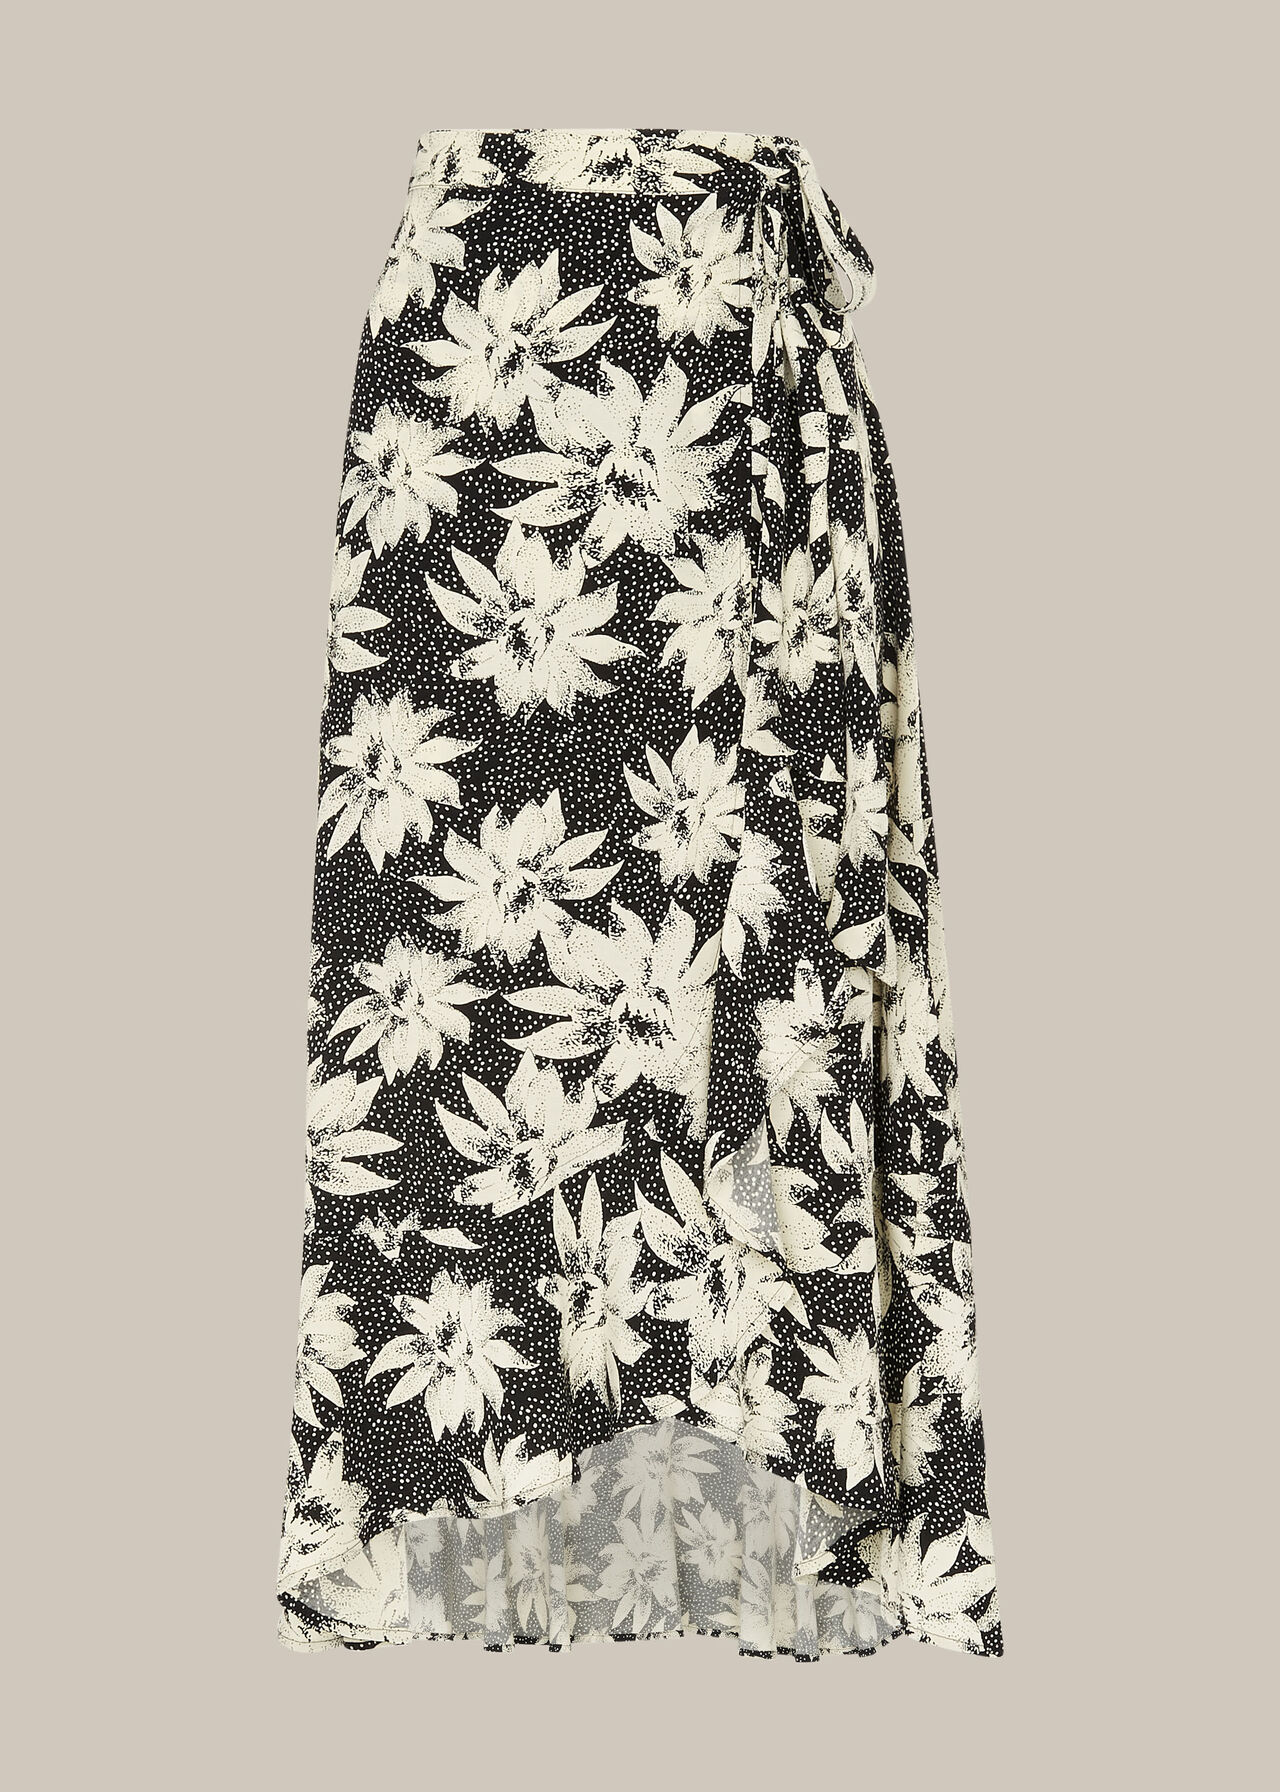 Starburst Floral Wrap Skirt Black/White